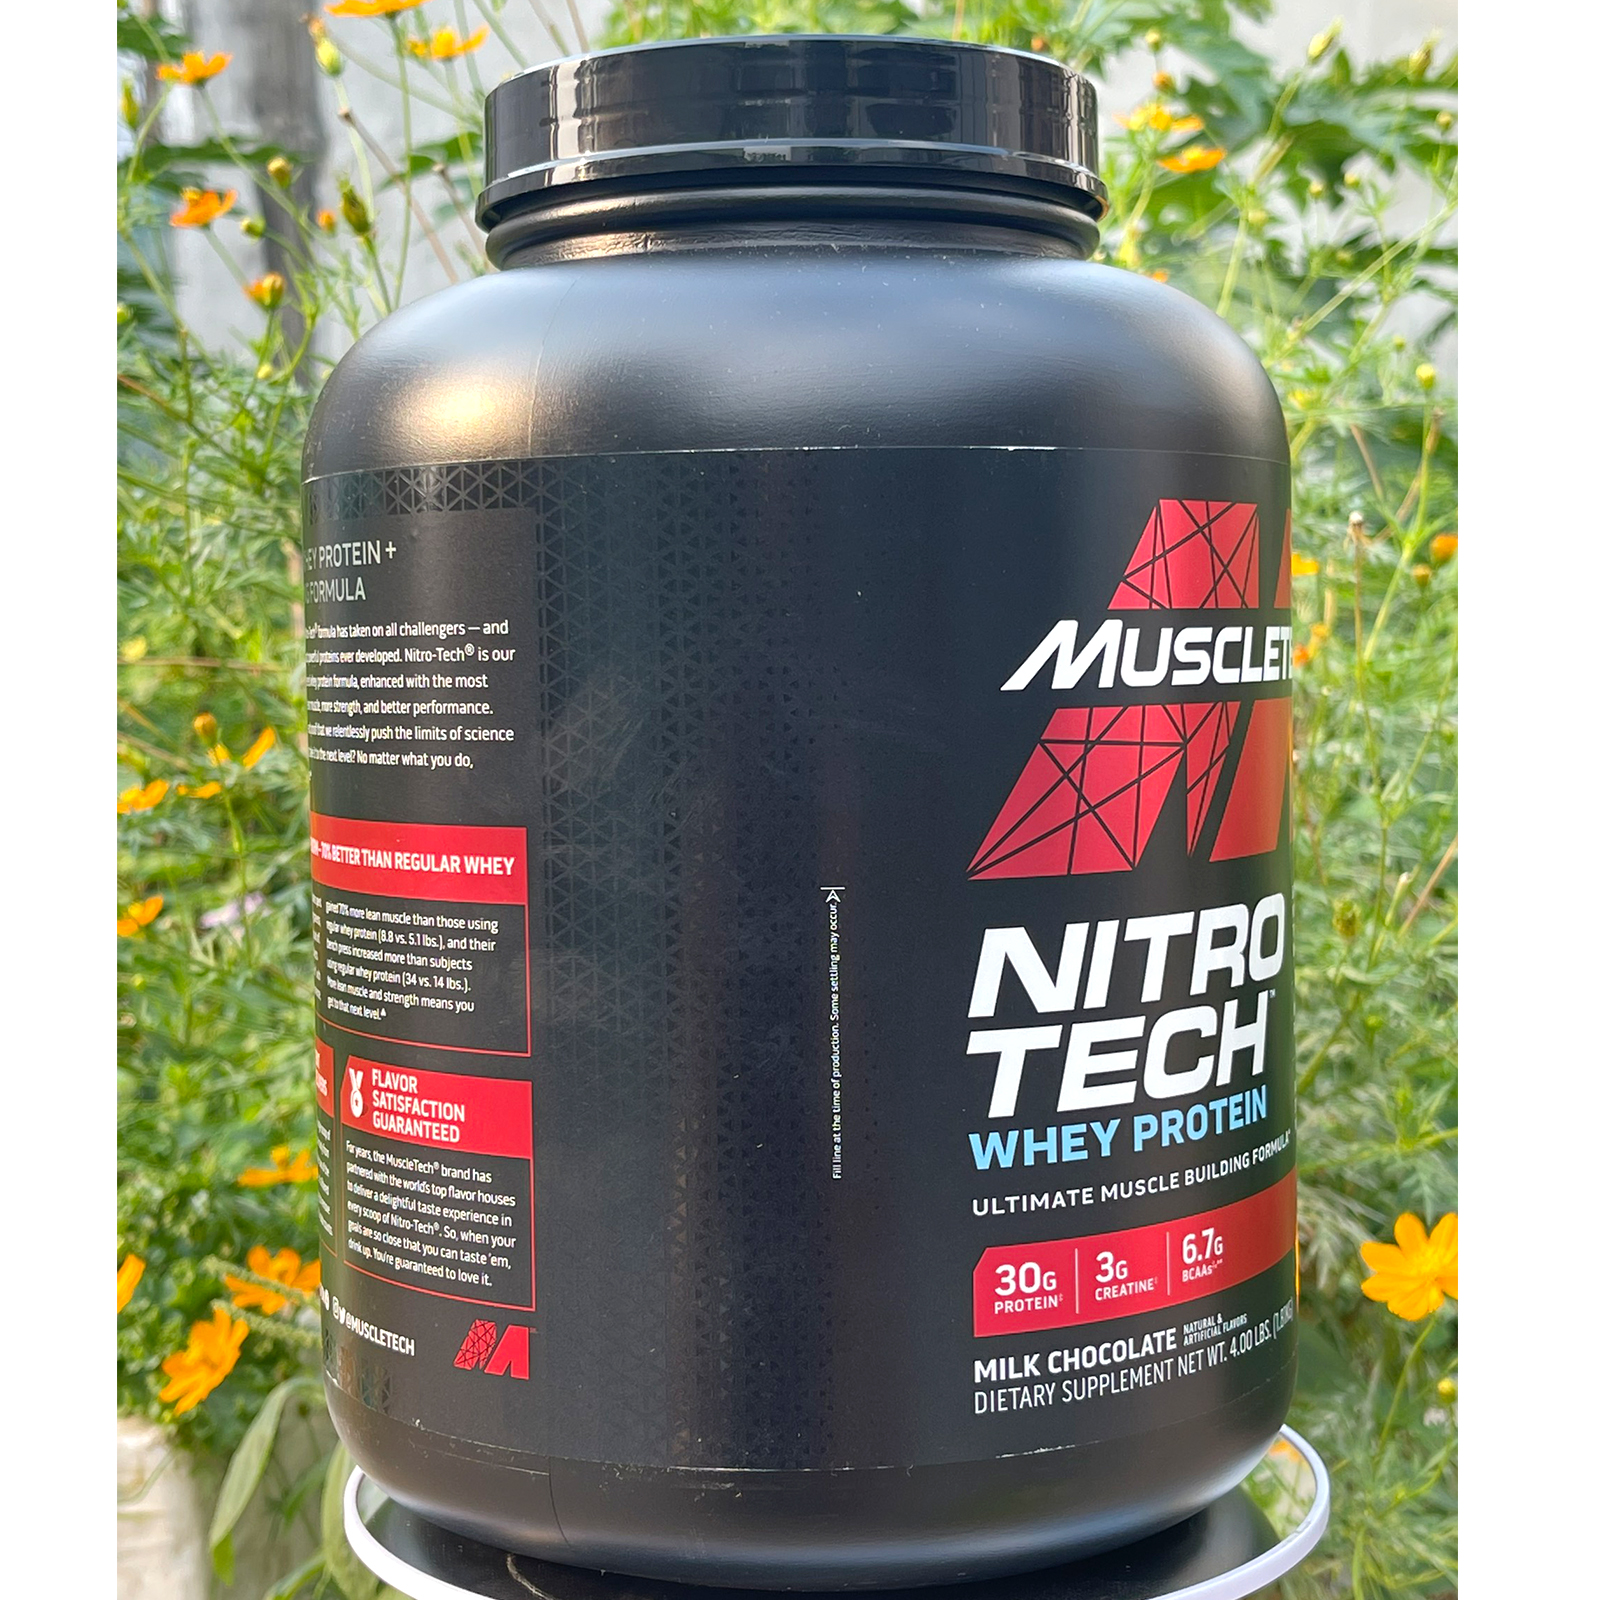 Combo Sữa tăng cơ cao cấp Whey Protein Nitro Tech của MuscleTech hương Chocolate hộp 40 lần dùng 4 LBS hỗ trợ tăng cơ, giảm cân, đốt mỡ cho người tập GYM & Bình lắc 600 ml (Màu Ngẫu Nhiên)